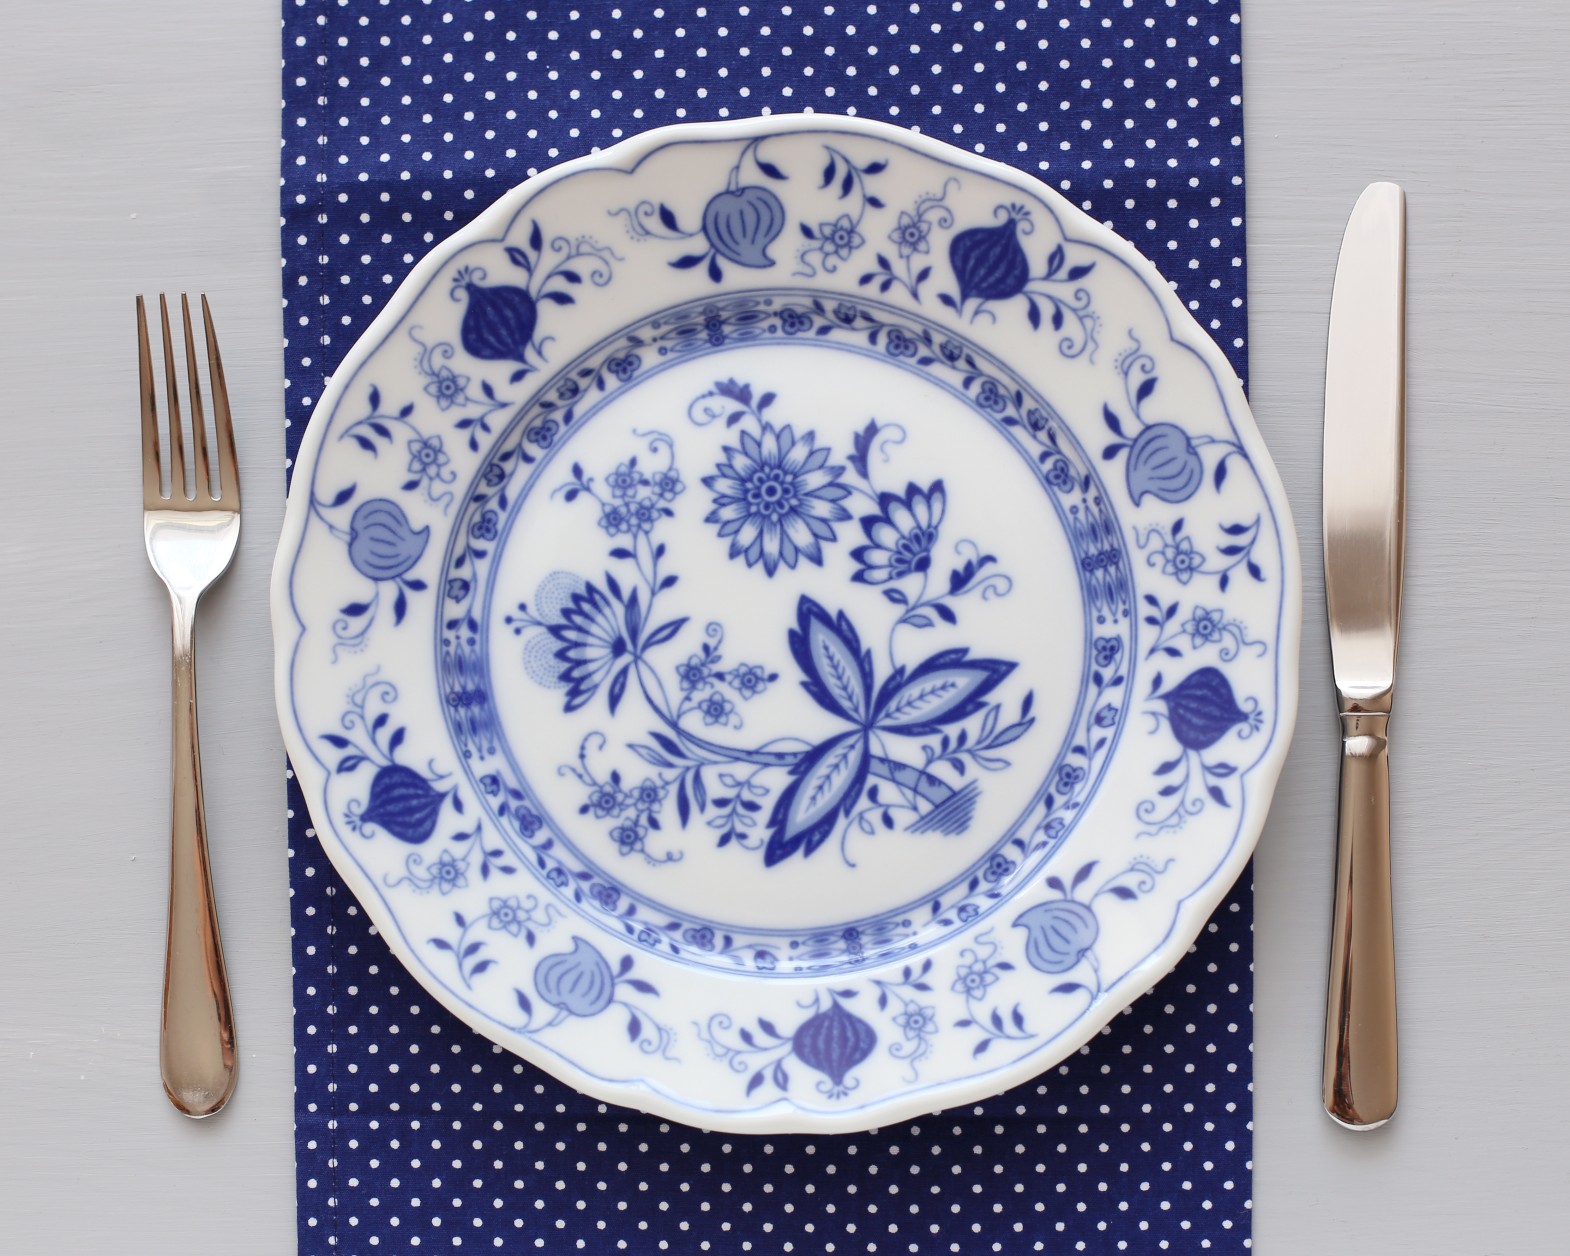 Porzellan Geschirr in Blau-Weiß: Traditionell & zeitlos